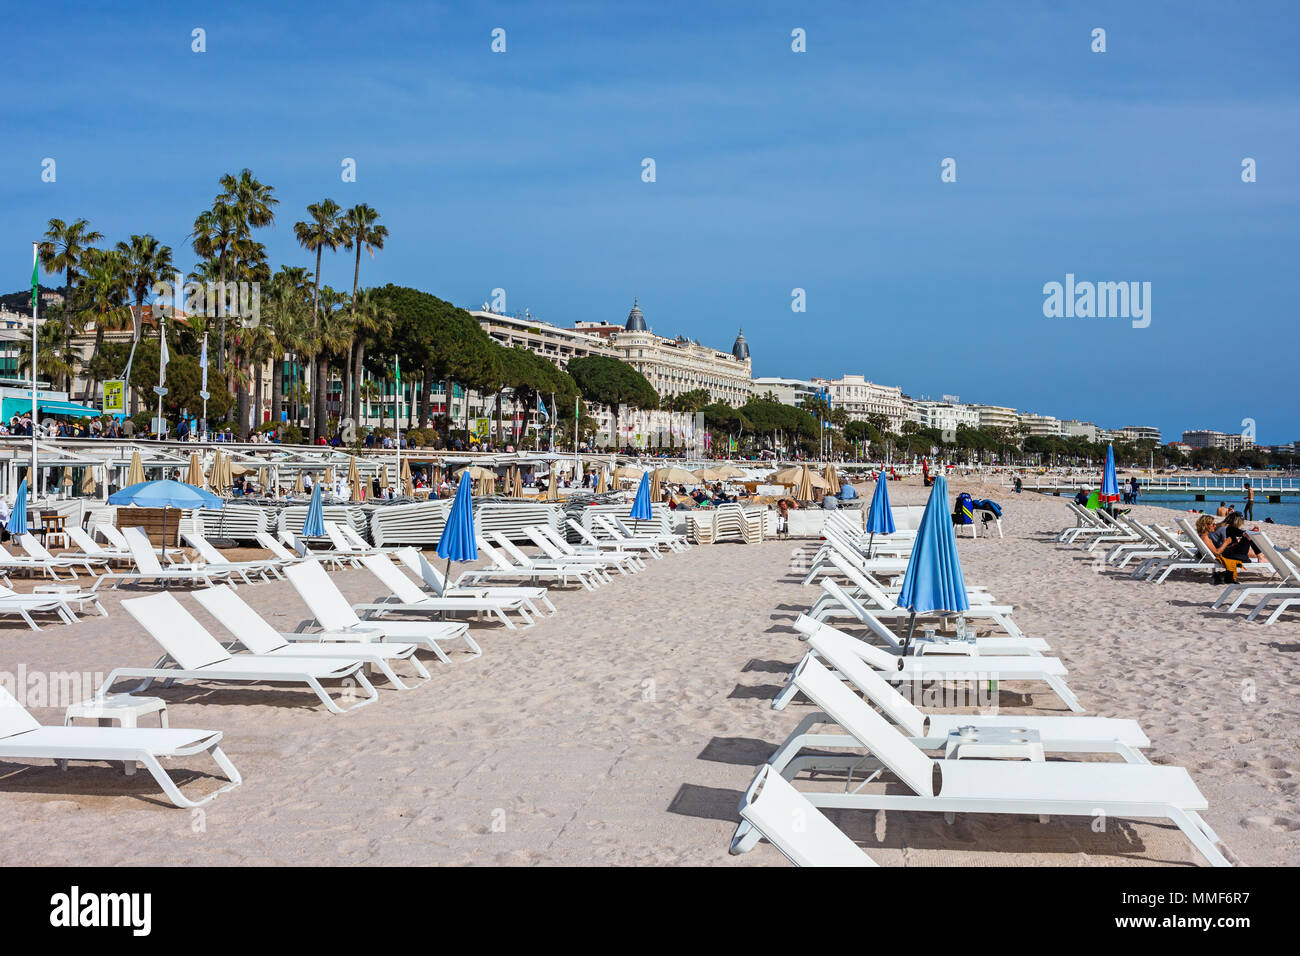 France, Cannes, plage avec transats sur azur à la mer Méditerranée, les bâtiments le long du boulevard de la Croisette Banque D'Images